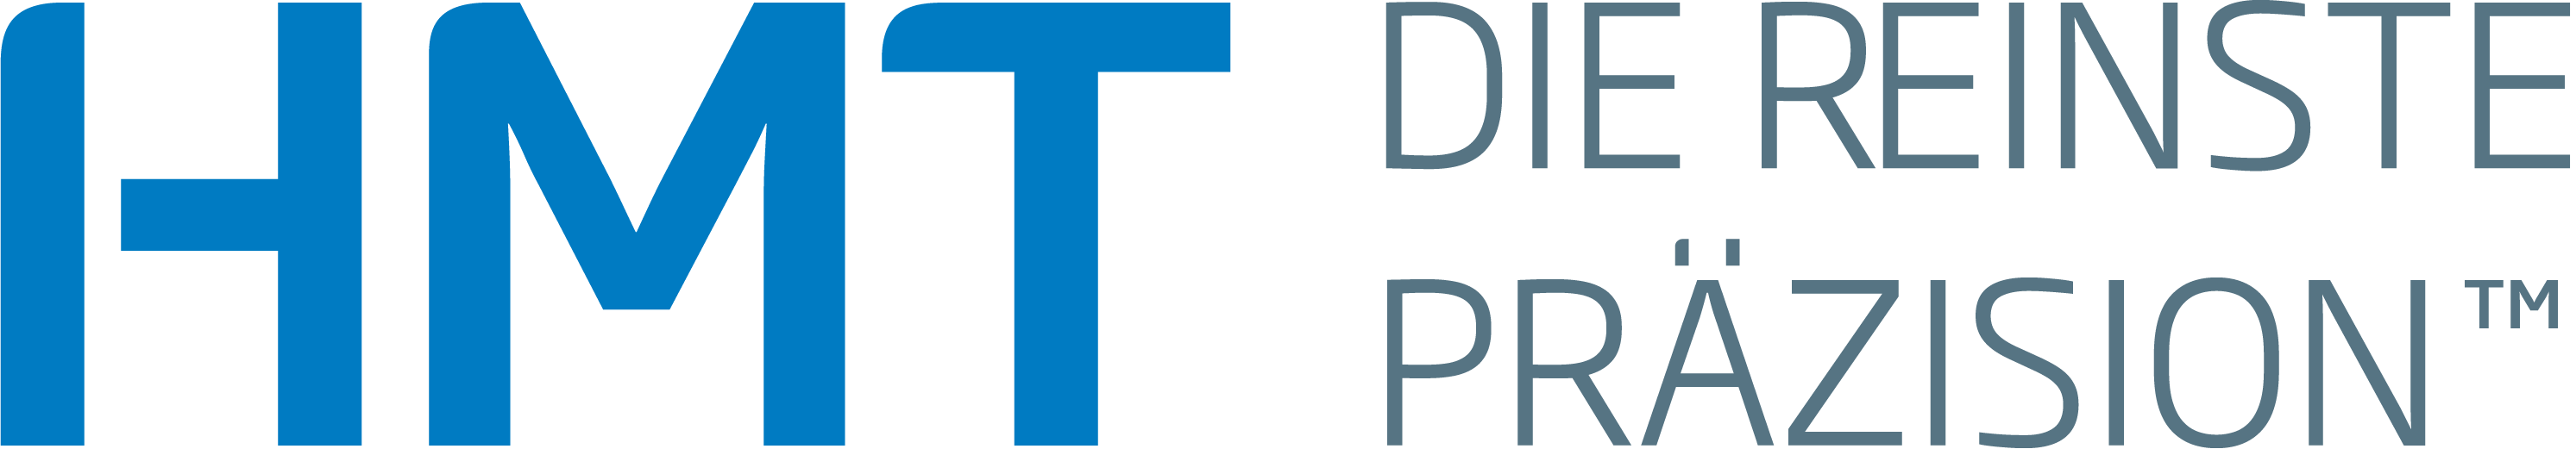 HMT GmbH Logo Deutsch